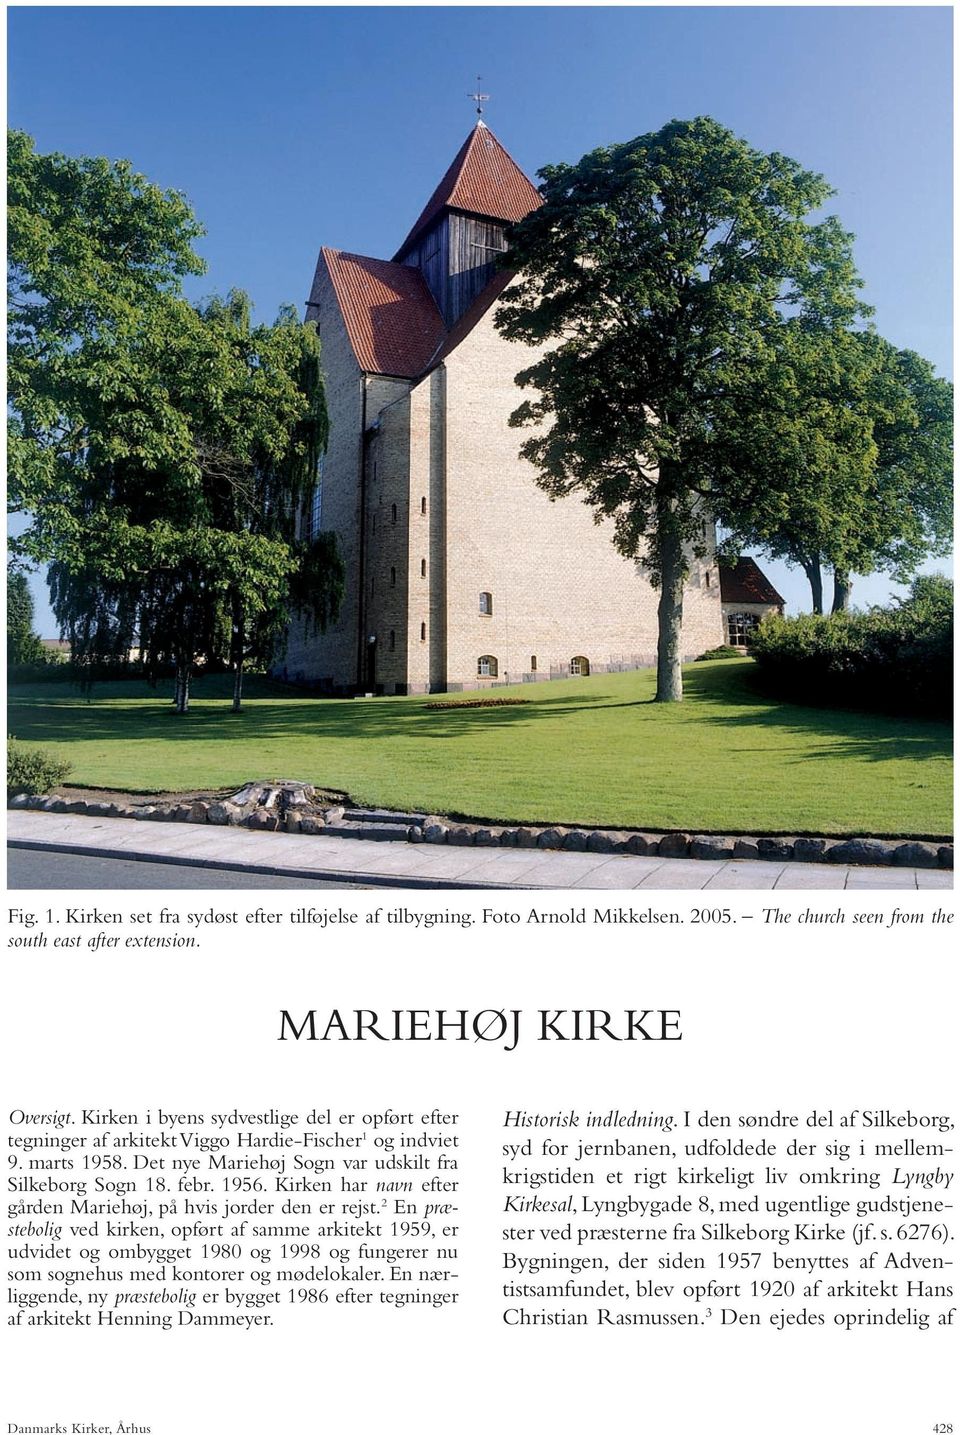 Kirken har navn efter gården Mariehøj, på hvis jorder den er rejst.